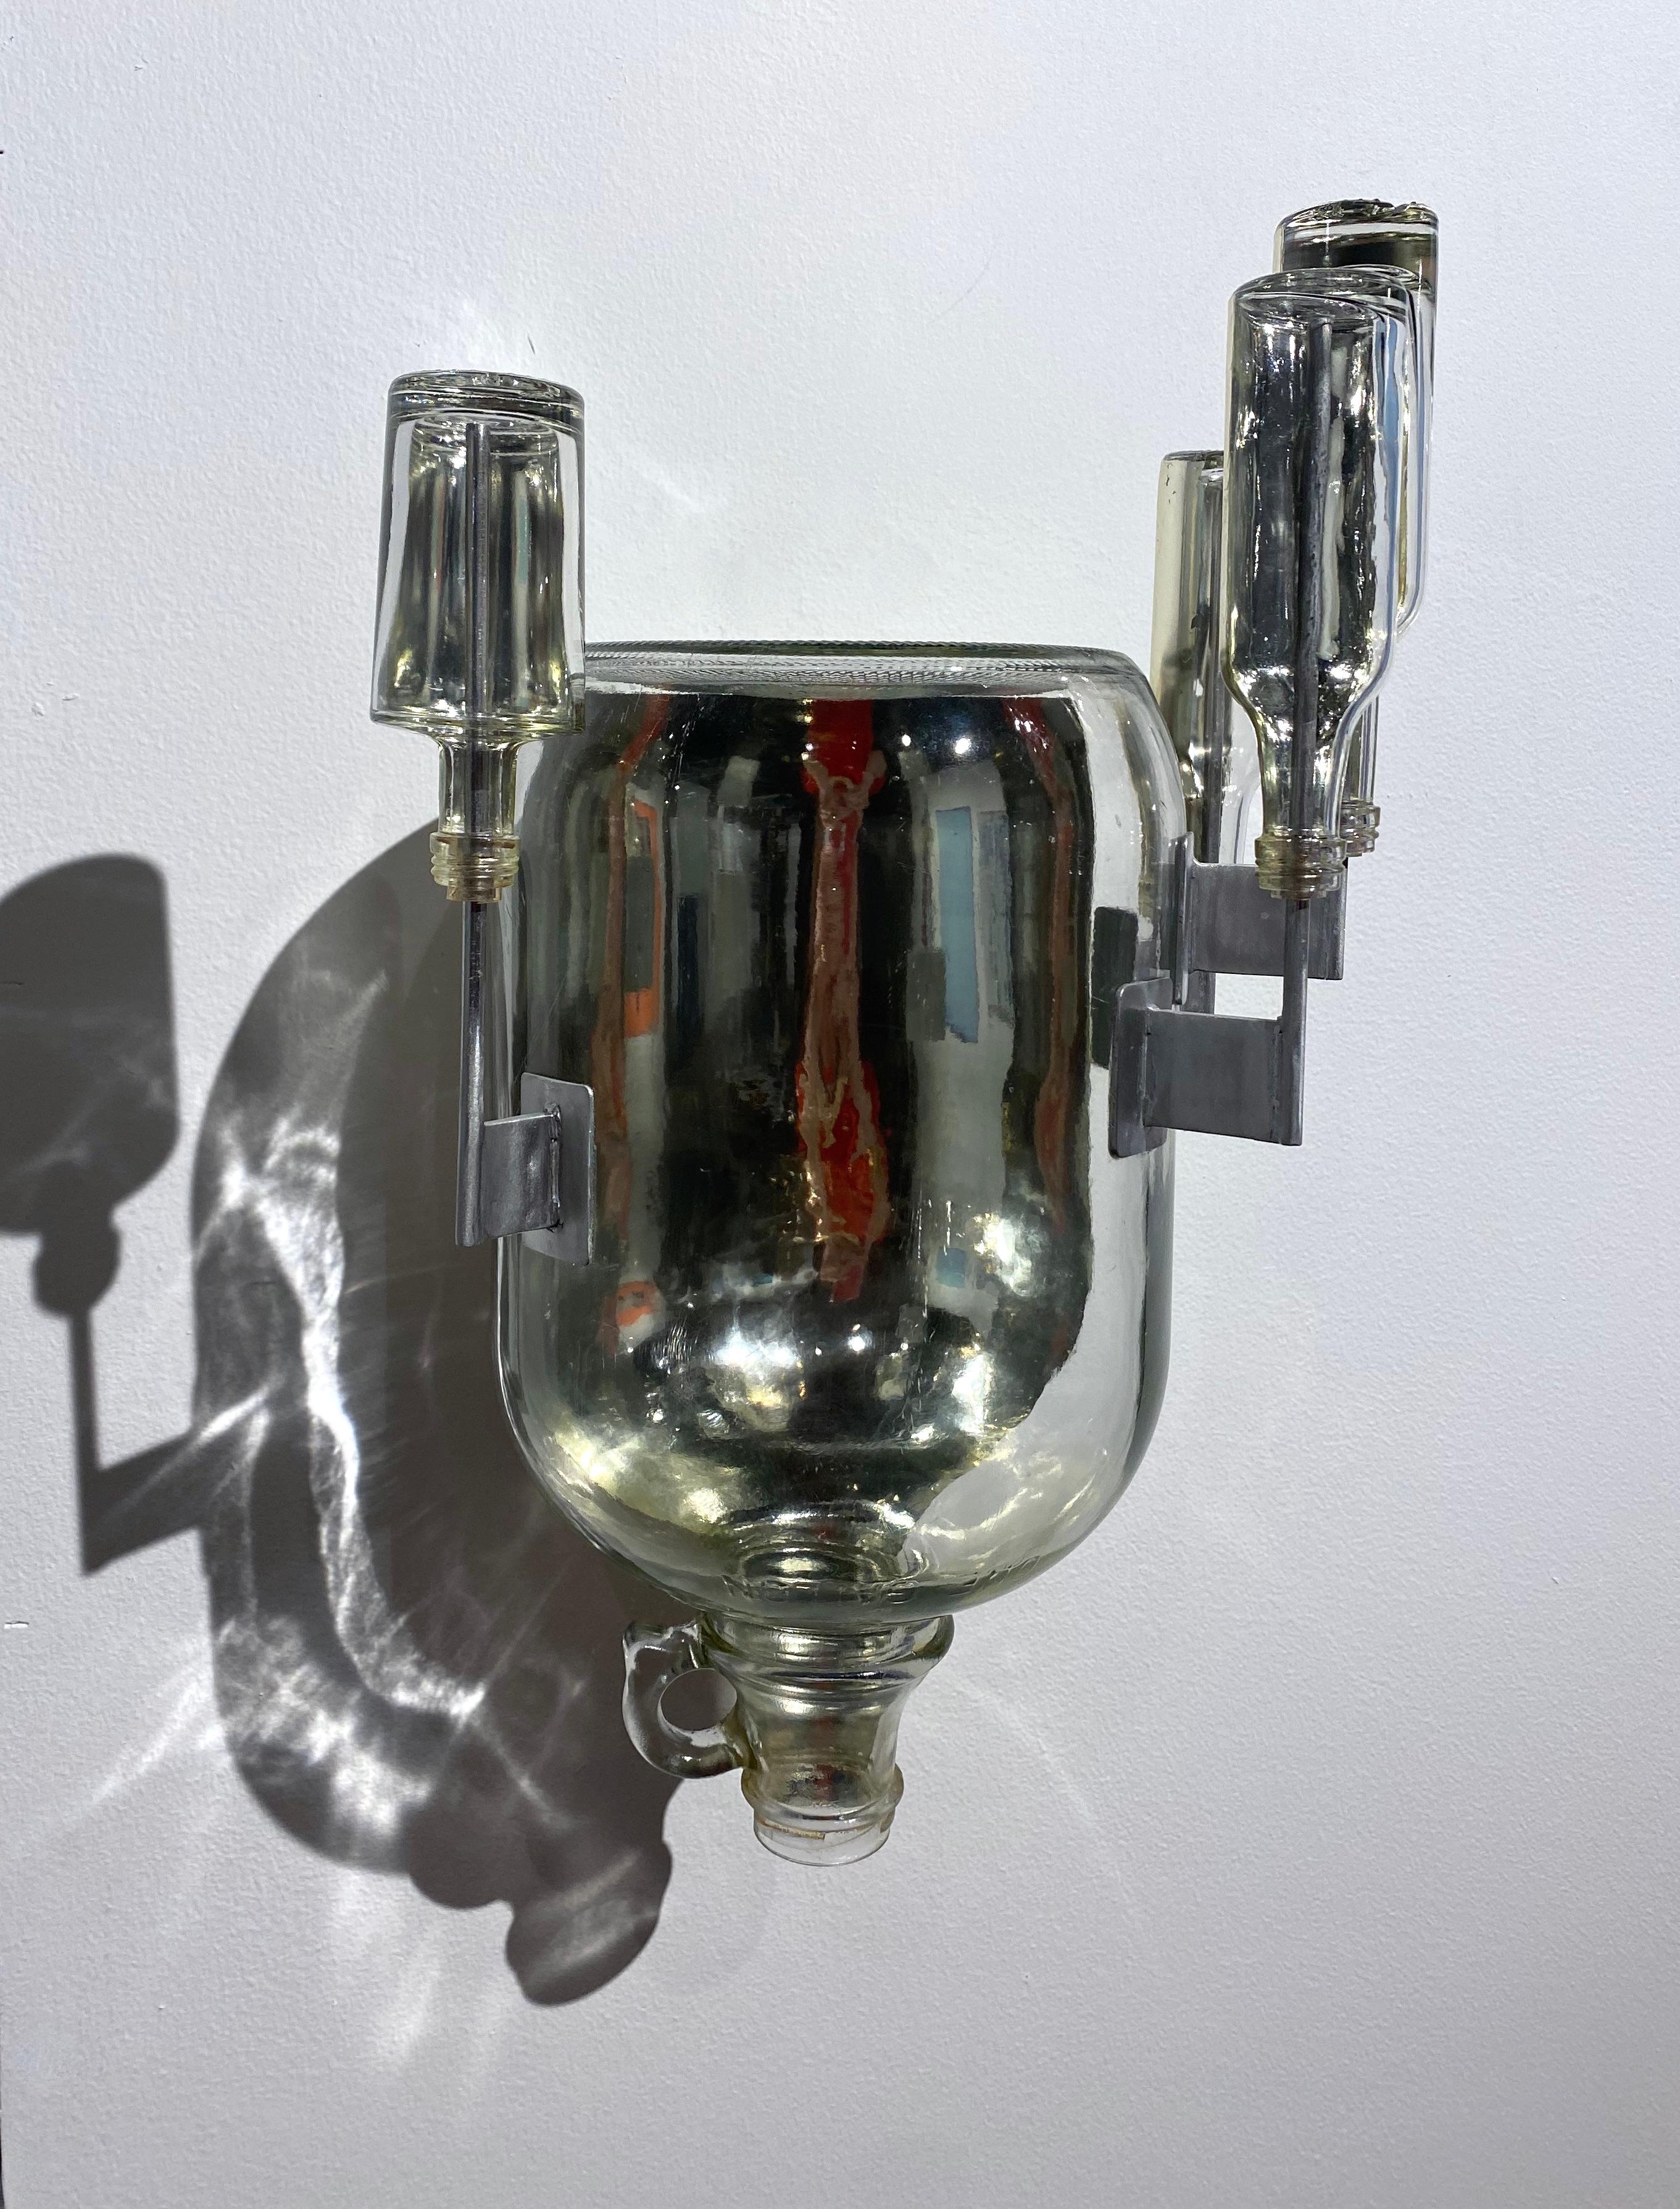 Tireuse d'eau sans titre, sculpture murale en verre, cruche en métal plaqué or blanc, bouteilles - Sculpture de Richard Klein